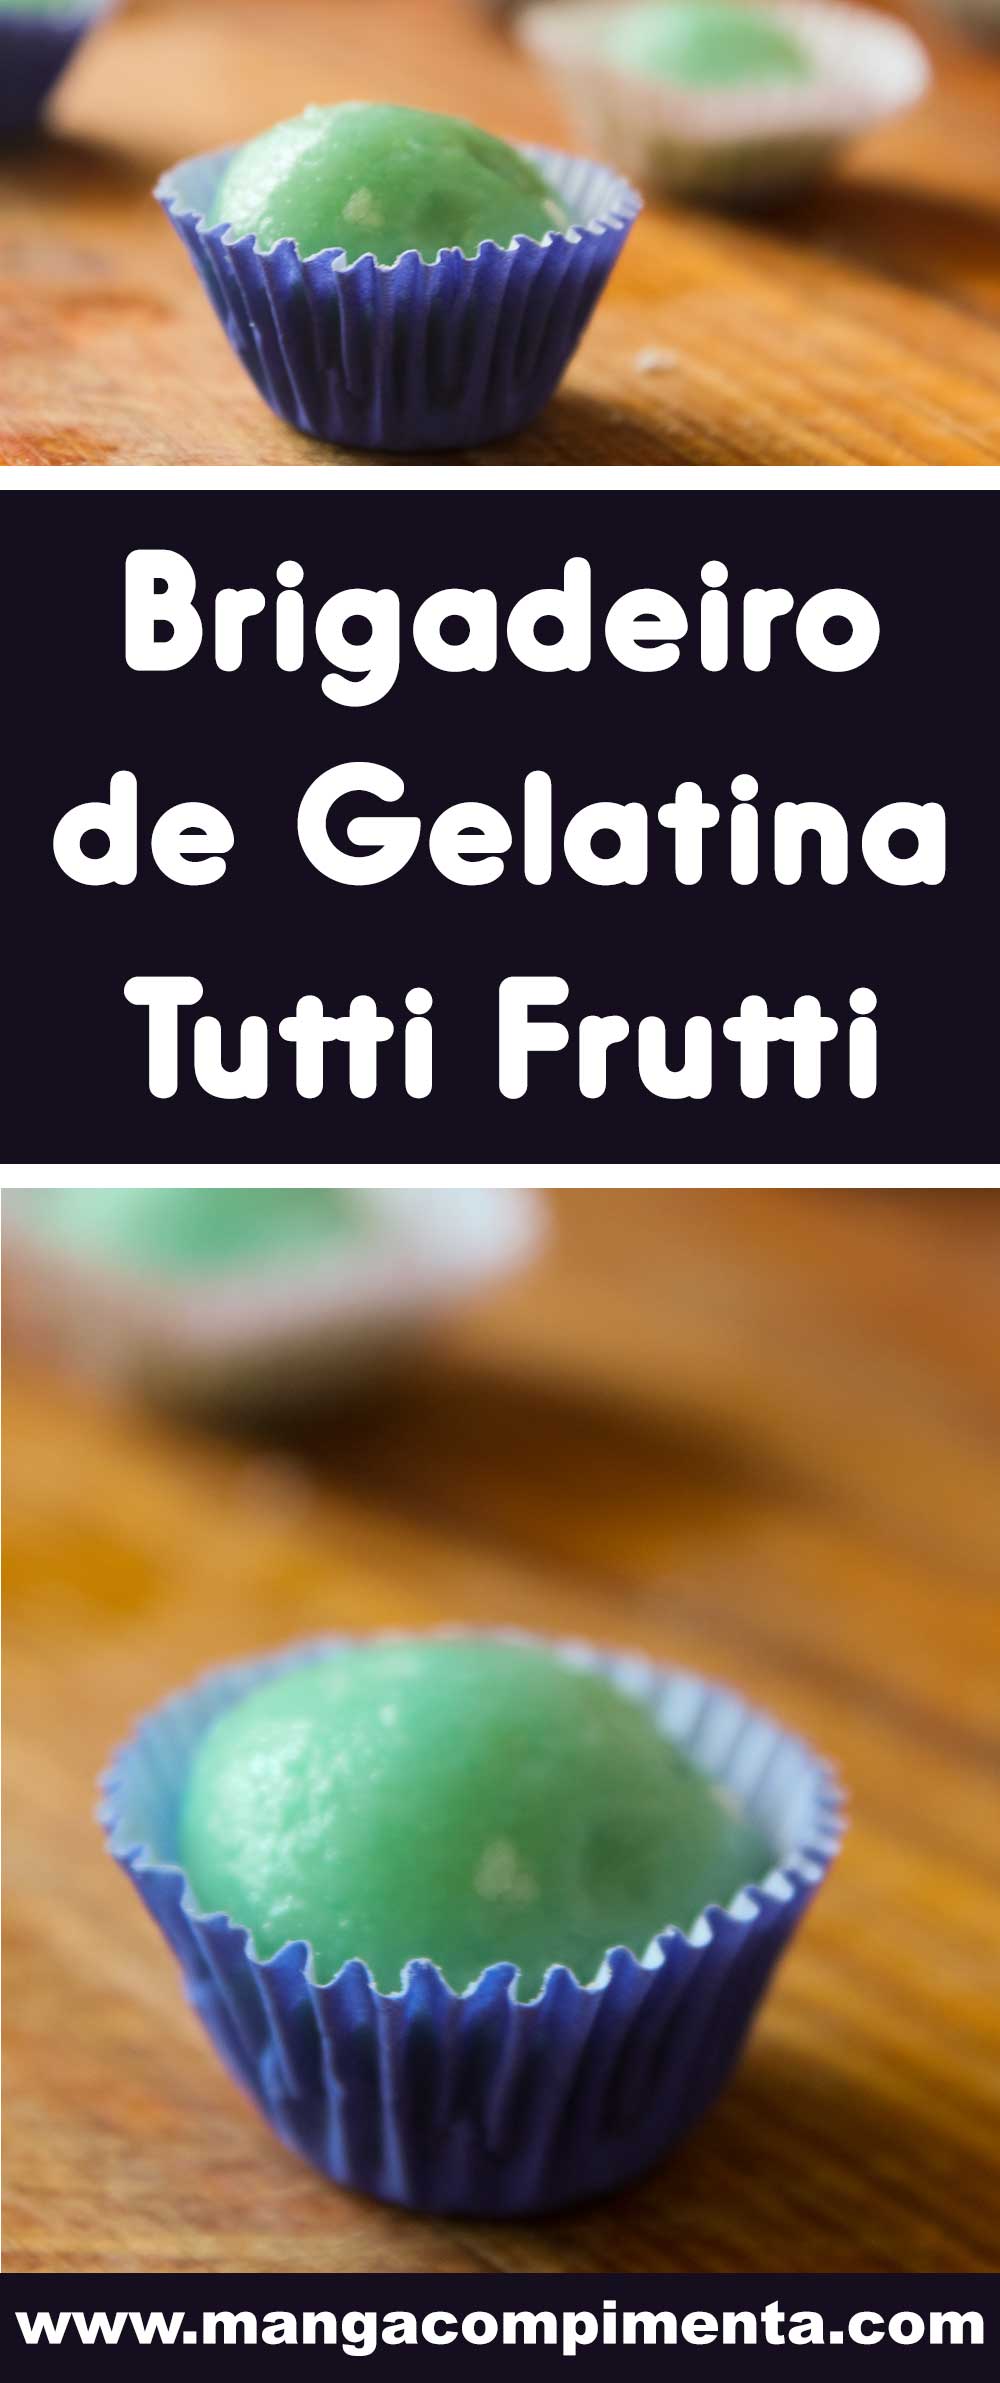 Receita de Brigadeiro de Gelatina Tutti Frutti - para festejar ou para comer sozinha assistindo um filme bacana!